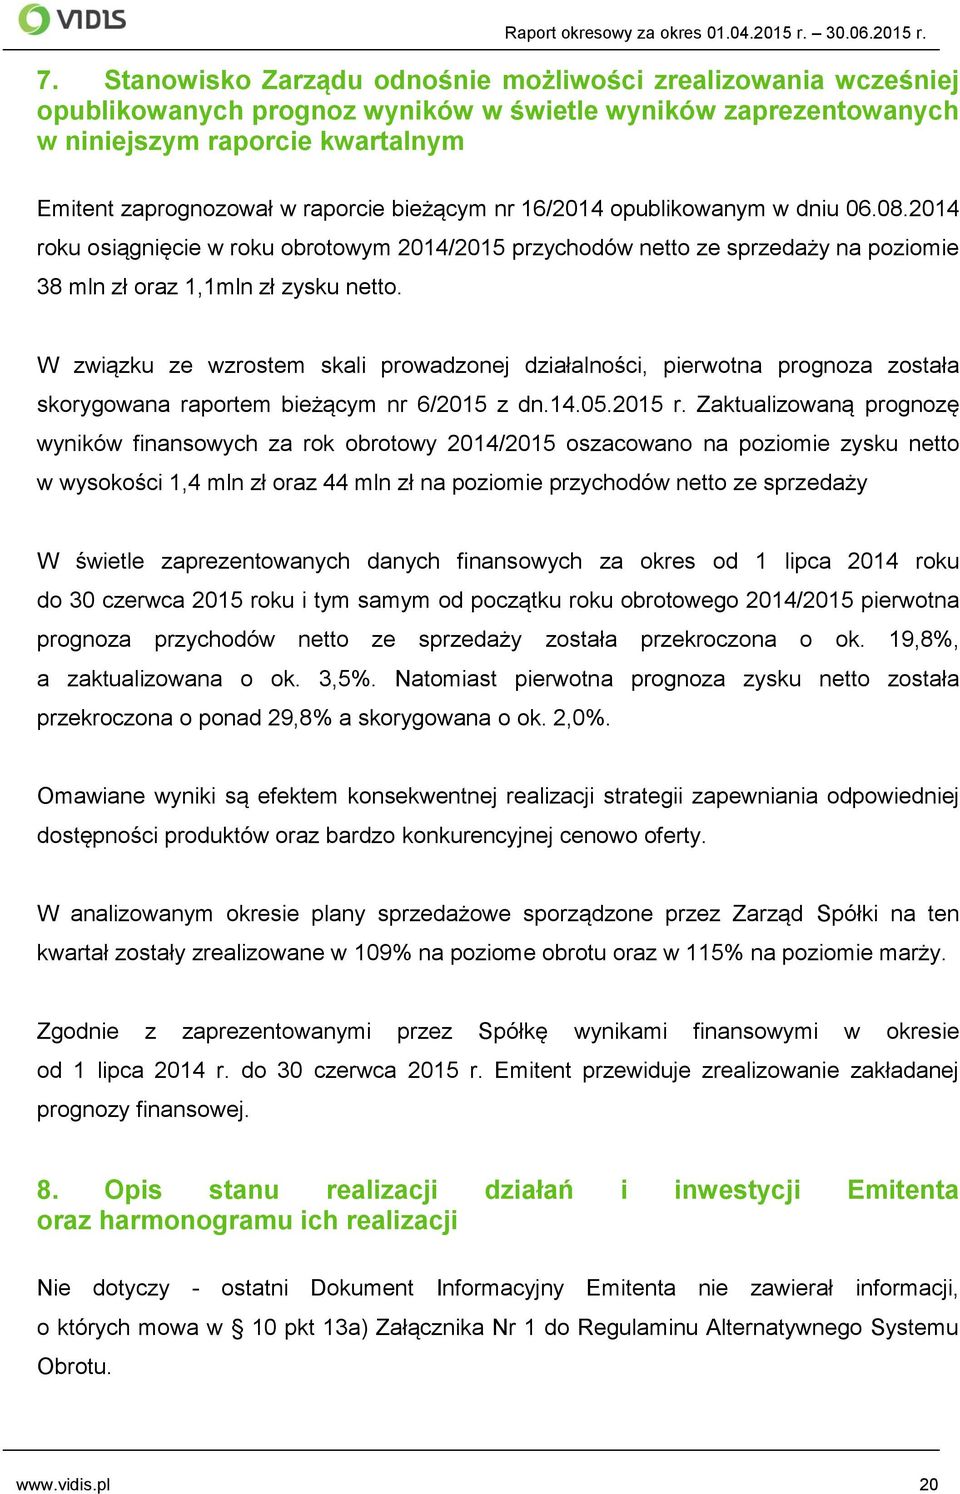 bieżącym nr 16/2014 opublikowanym w dniu 06.08.2014 roku osiągnięcie w roku obrotowym 2014/2015 przychodów netto ze sprzedaży na poziomie 38 mln zł oraz 1,1mln zł zysku netto.